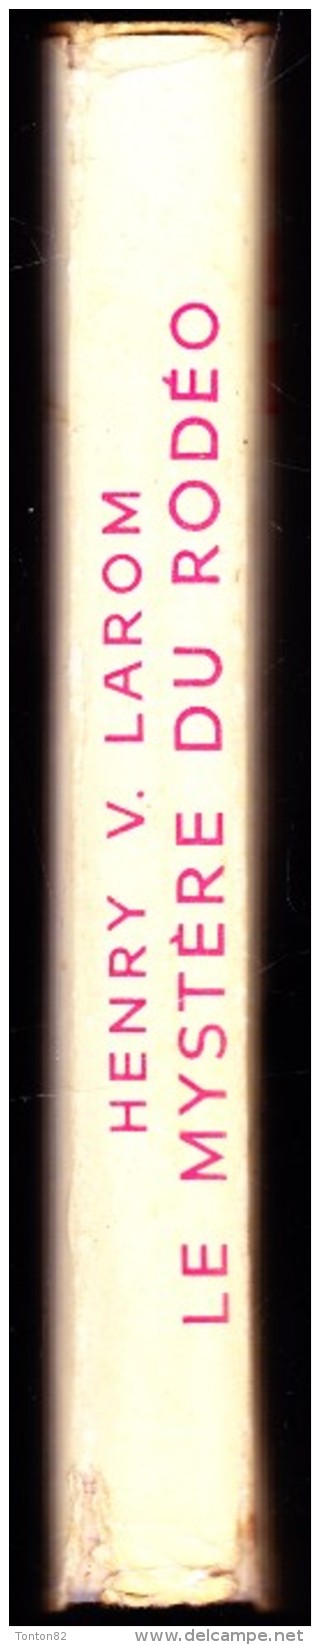 Henry V. Larom - Le Mystère Du Rodéo - Bibliothèque De La Jeunesse - ( 1954 ) . - Bibliothèque De La Jeunesse